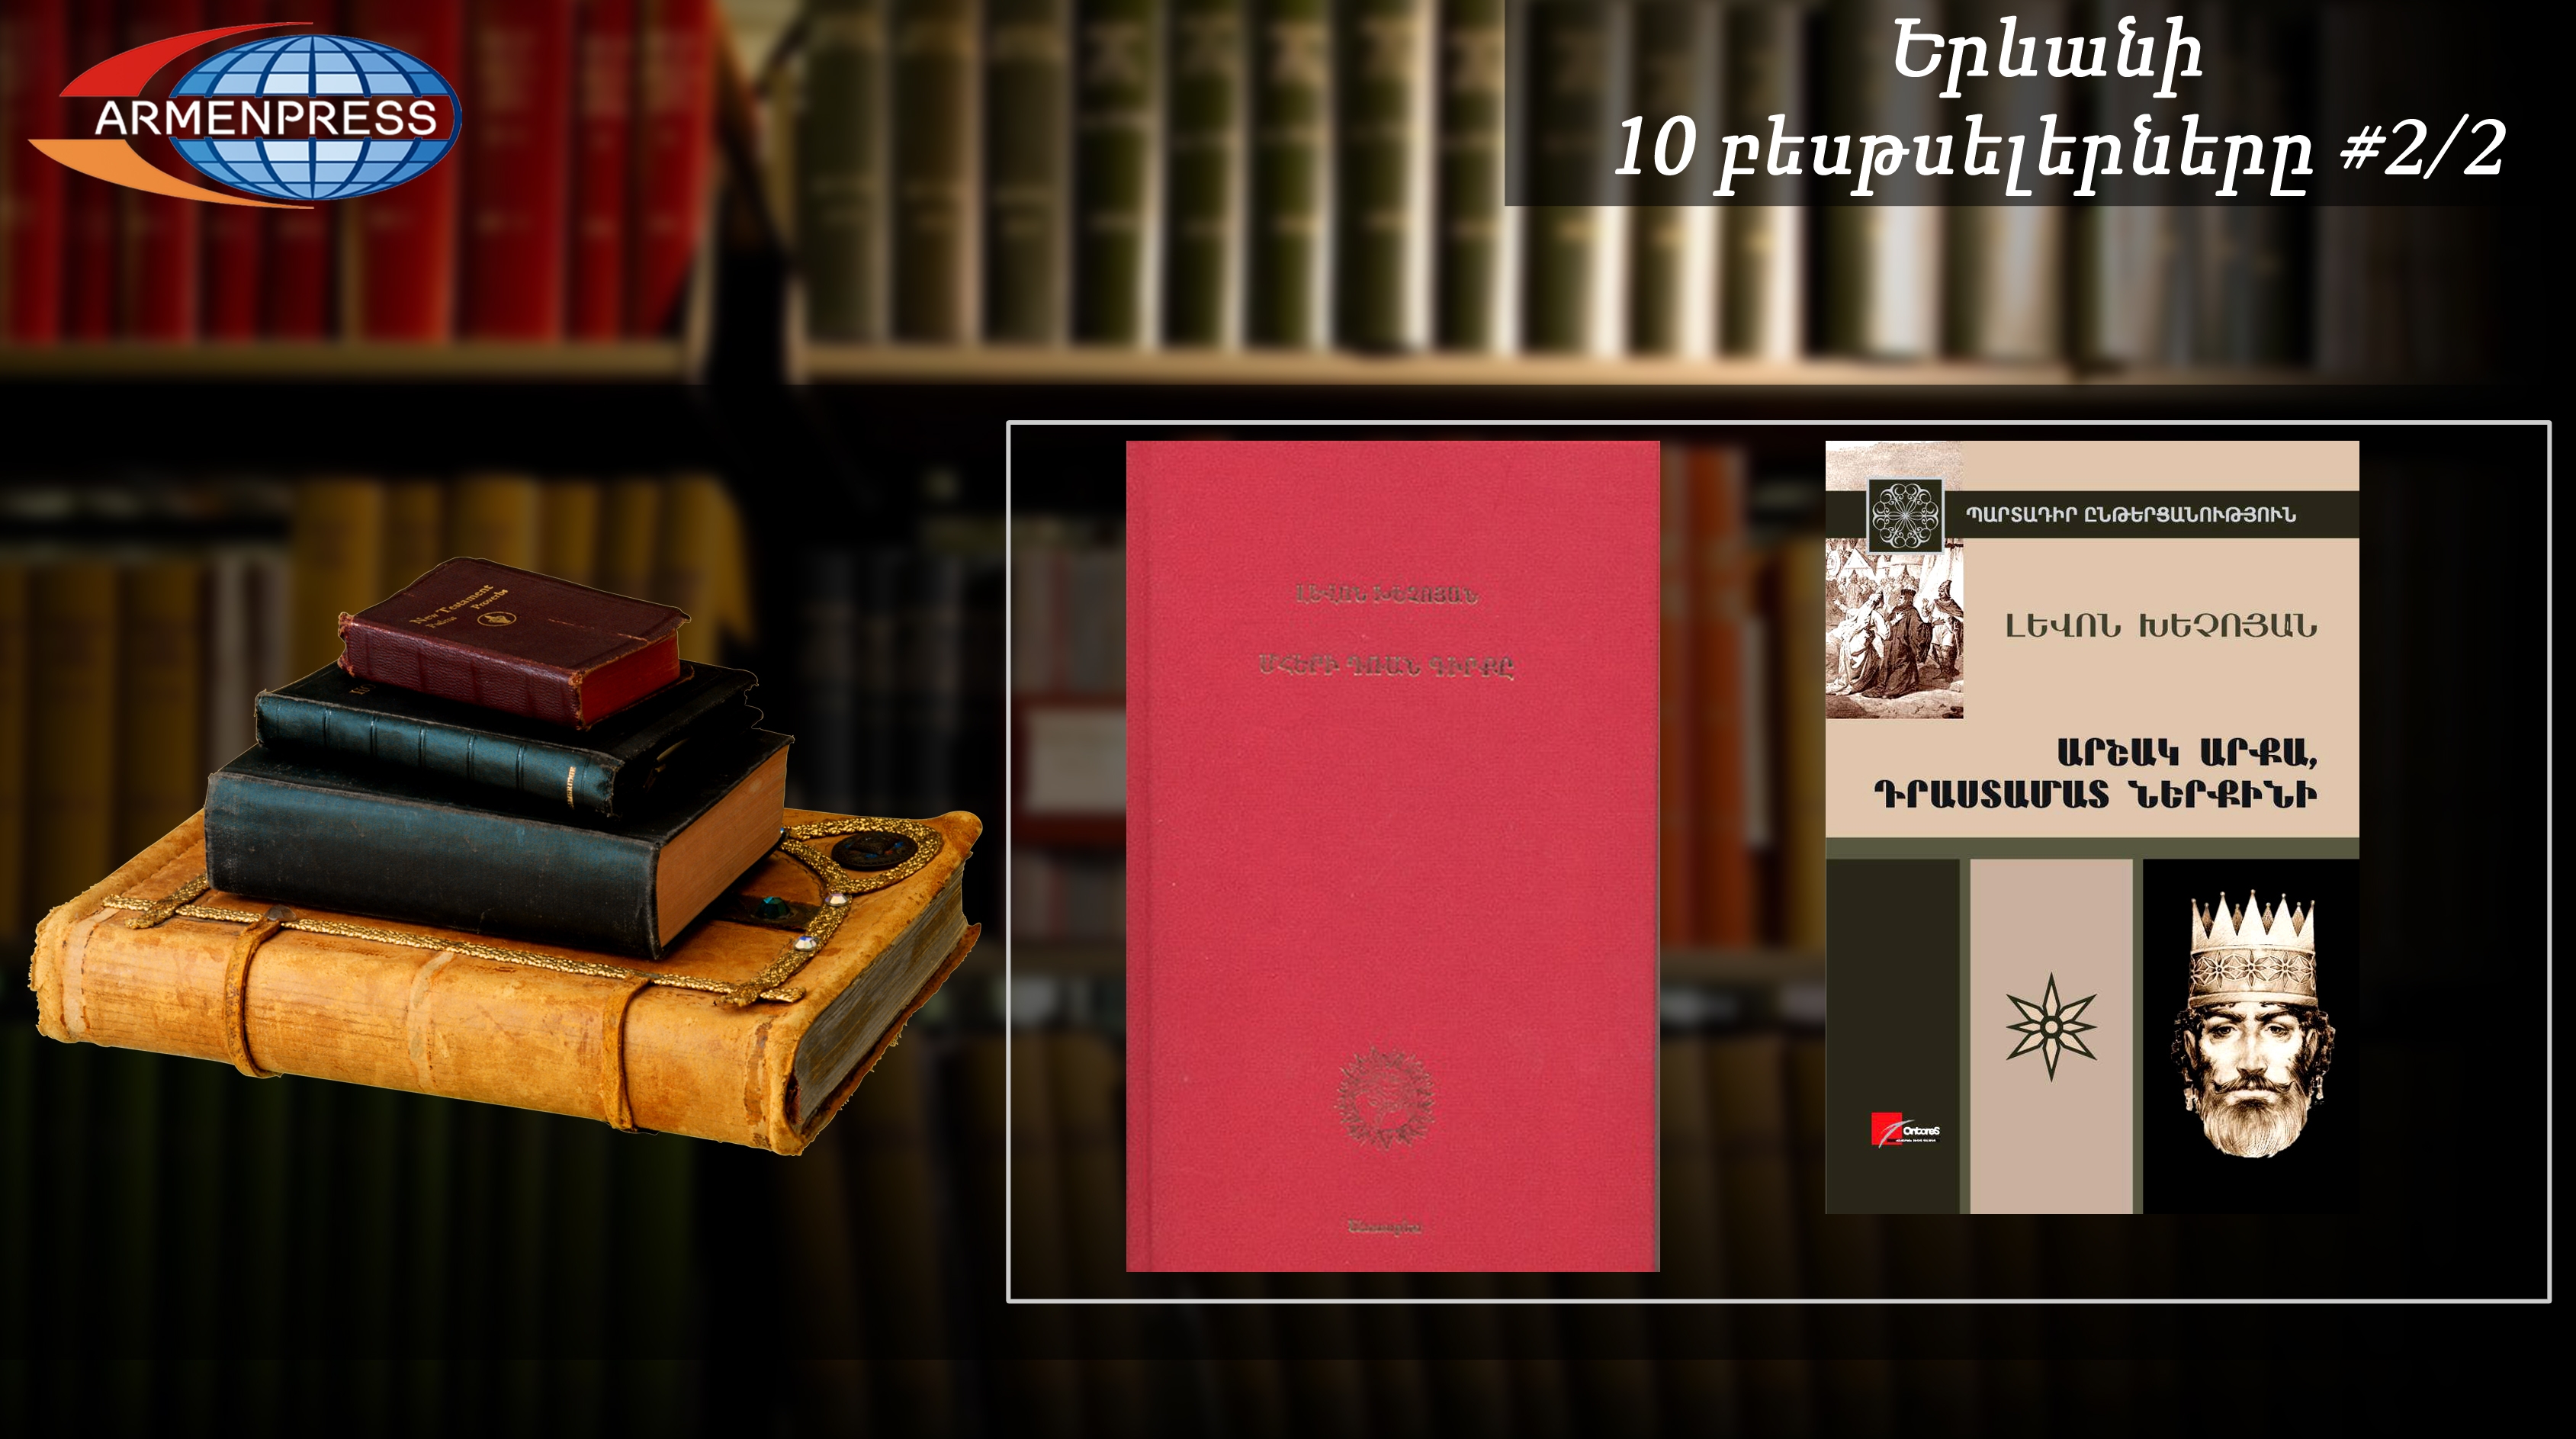 Երևանյան բեսթսելեր 2/2. Լևոն Խեչոյանի գիրքը մեկ շաբաթում աննախադեպ մեծ 
թվով է վաճառվել